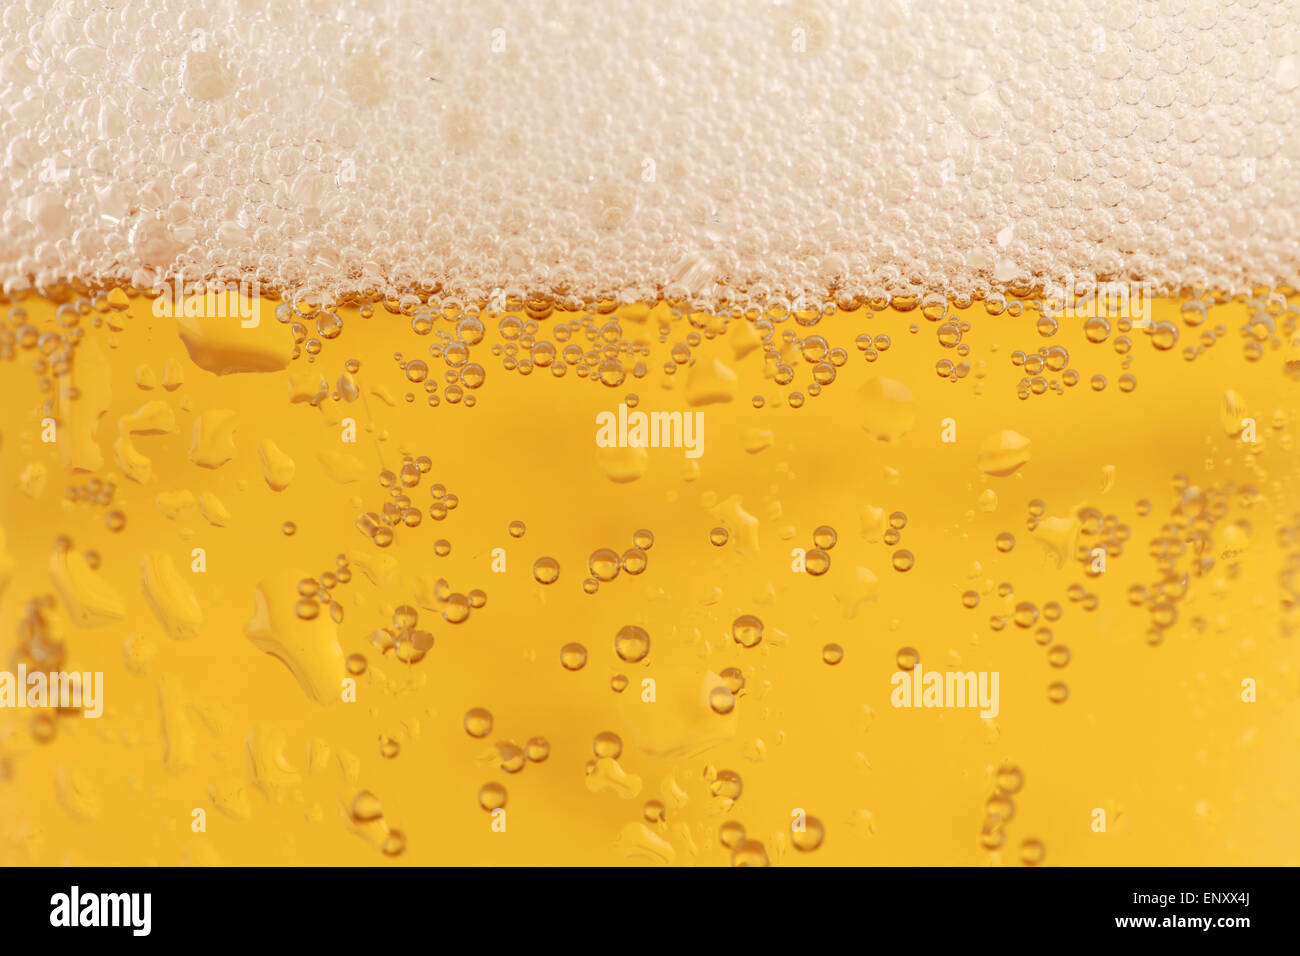 Bier im Glas Stock Photo